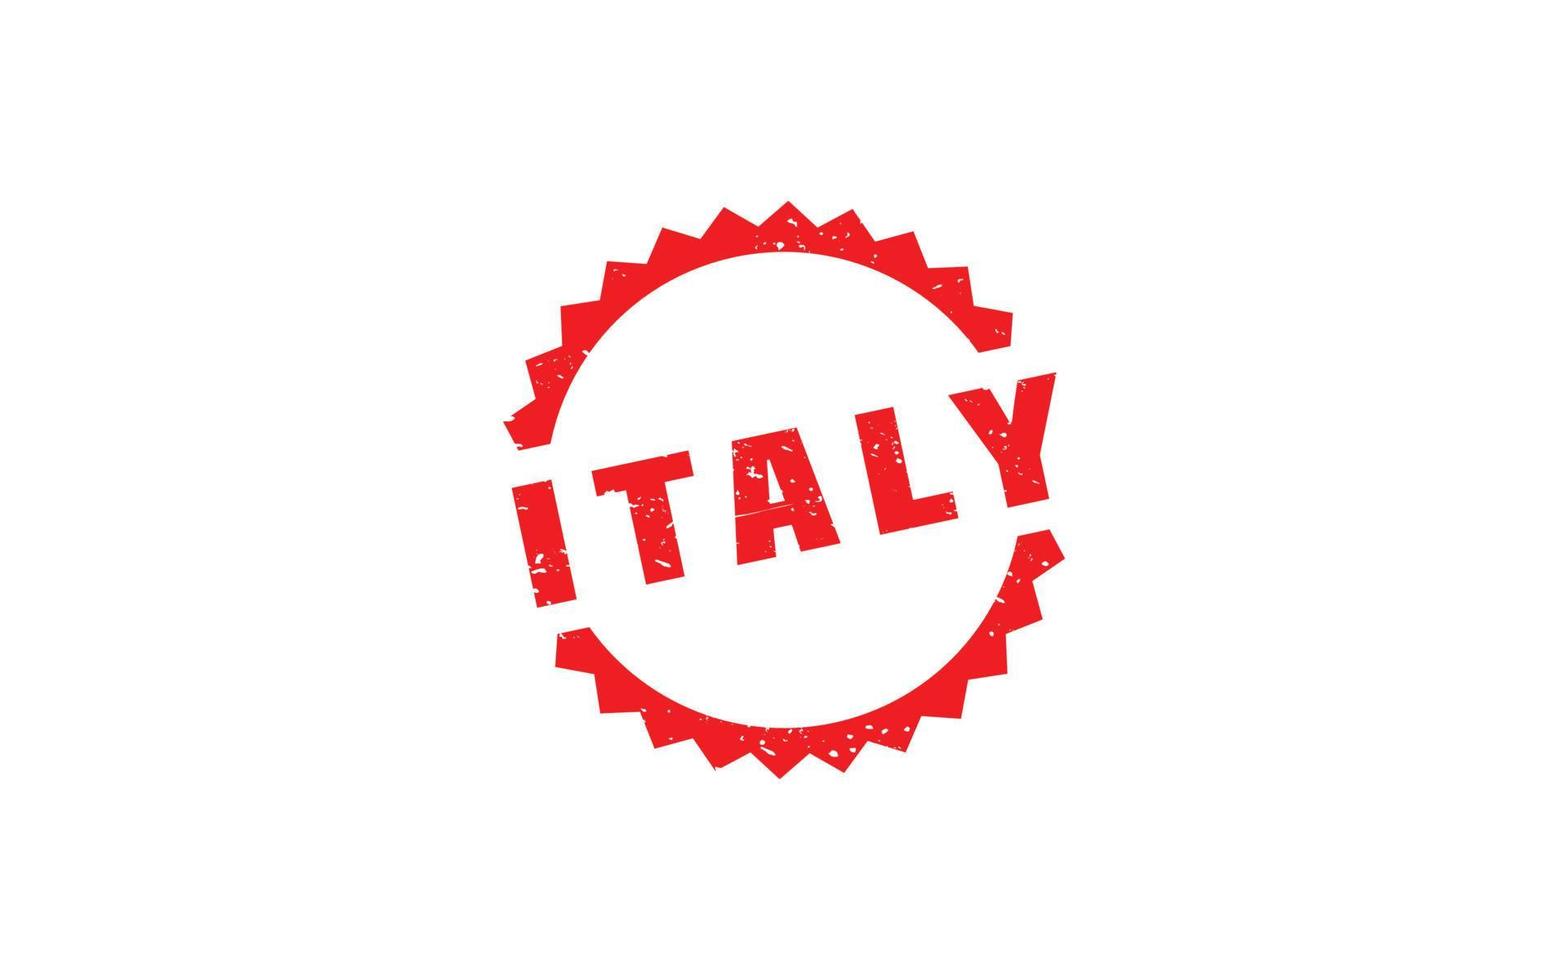 Caoutchouc de timbre Italie avec style grunge sur fond blanc vecteur